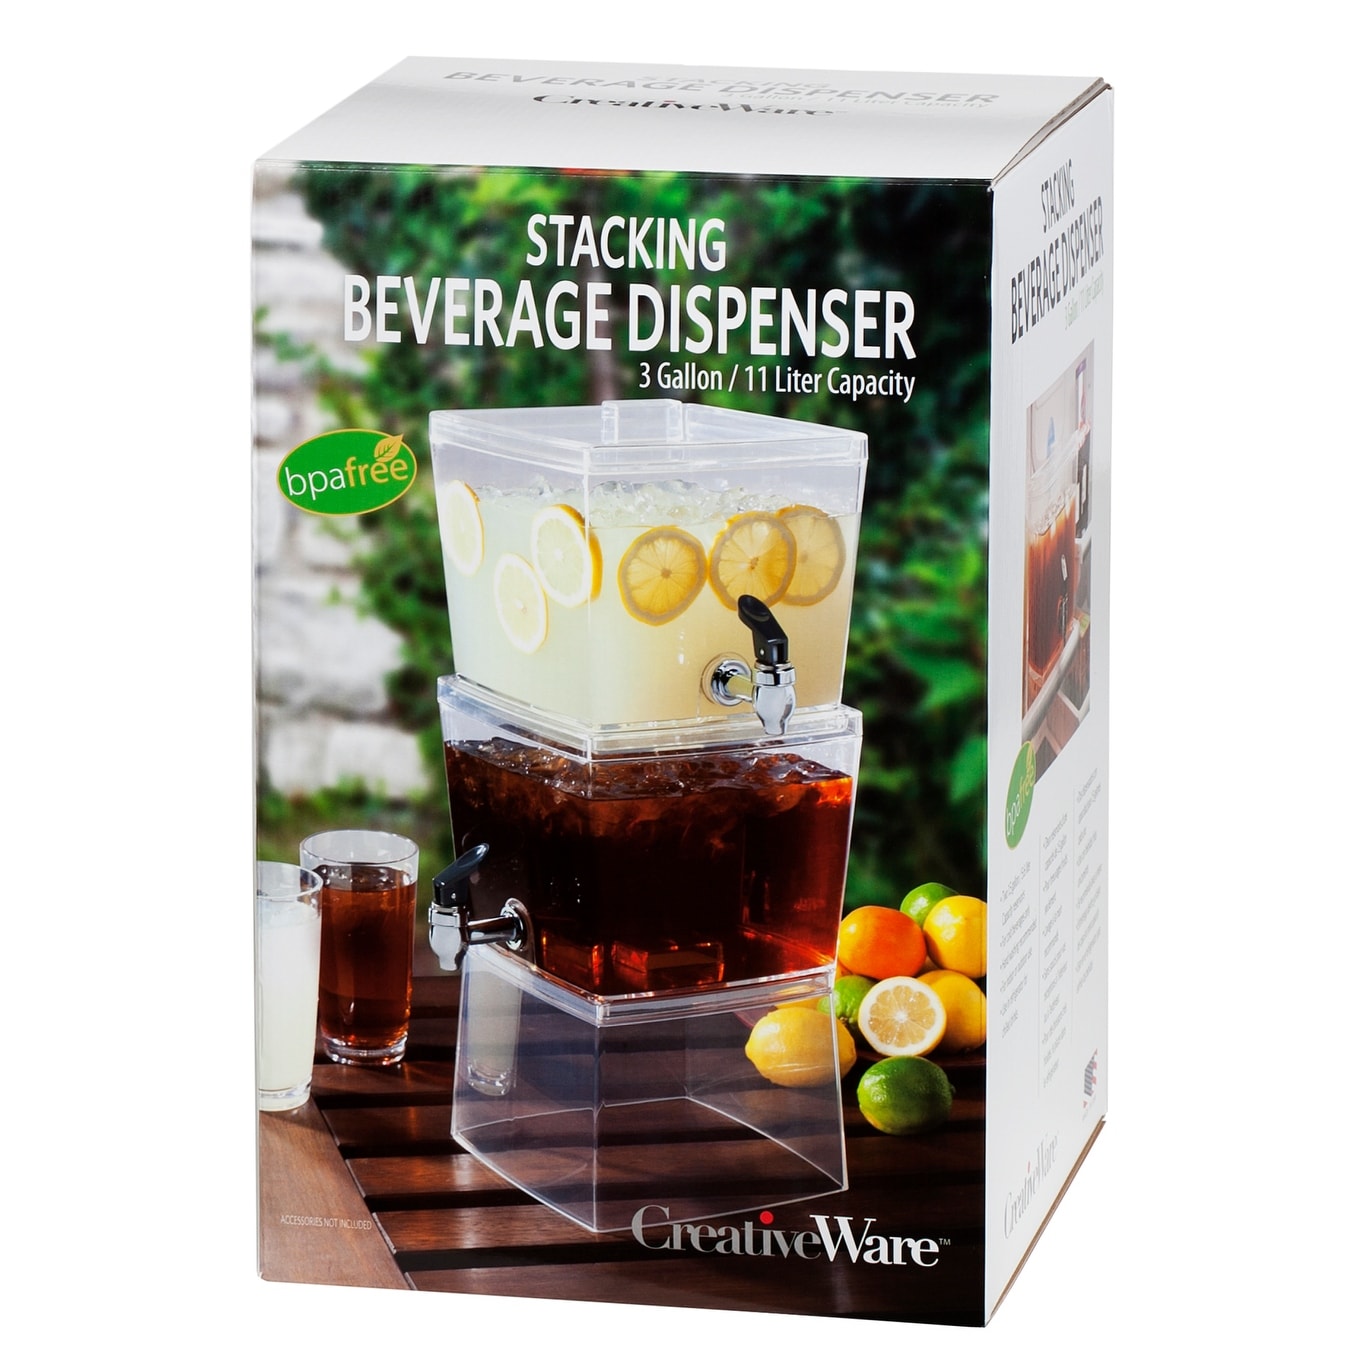 Creative Ware Beverage Dispenser, Acrylic, 3 Gallon